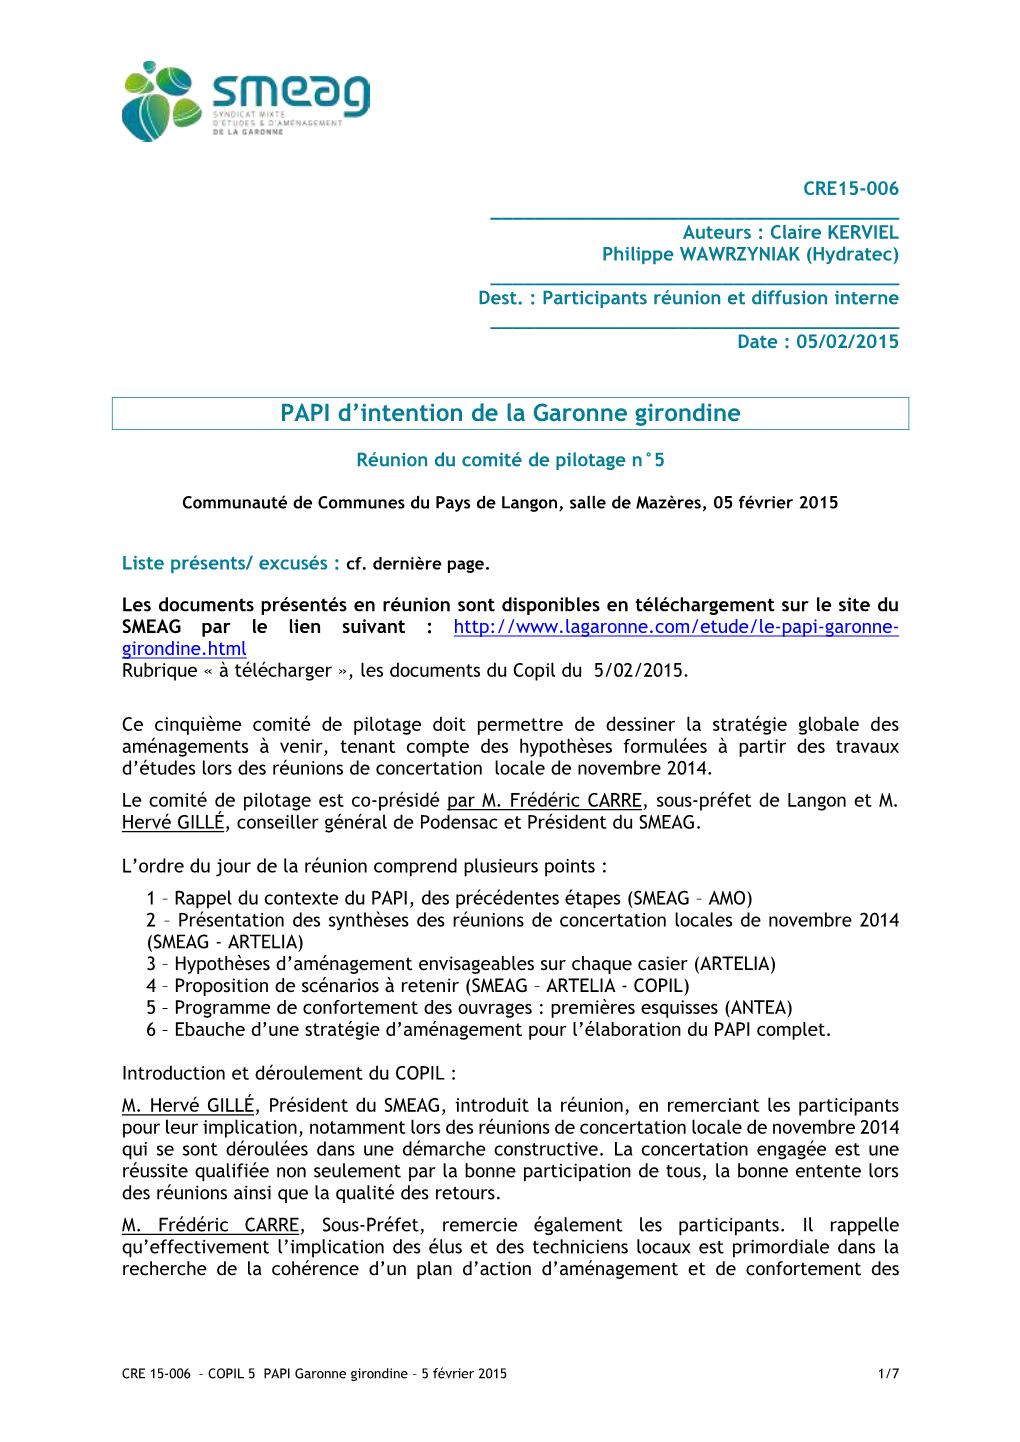 PAPI D'intention De La Garonne Girondine